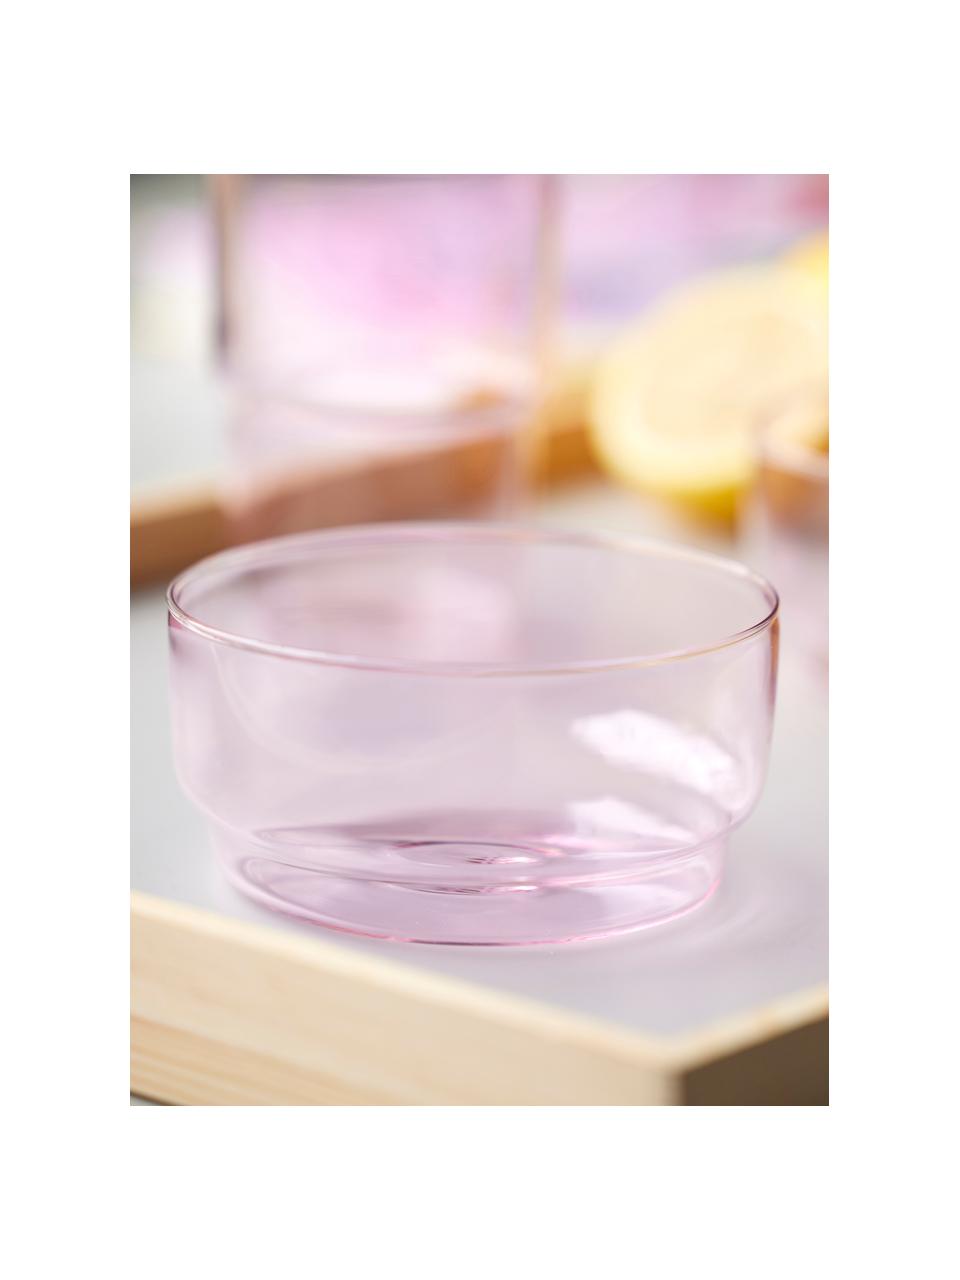 Misky z borosilikátového skla Torino, 2 ks, Borosilikátové sklo

Objavte všestrannosť borosilikátového skla pre váš domov! Borosilikátové sklo je kvalitný, spoľahlivý a robustný materiál. Vyznačuje sa mimoriadnou tepelnou odolnosťou a preto je ideálny pre váš horúci čaj alebo kávu. V porovnaní s klasickým sklom je borosilikátové sklo odolnejšie voči rozbitiu a prasknutiu, a preto je bezpečným spoločníkom vo vašej domácnosti., Svetloružová, priehľadná, Ø 12 x V 6 cm